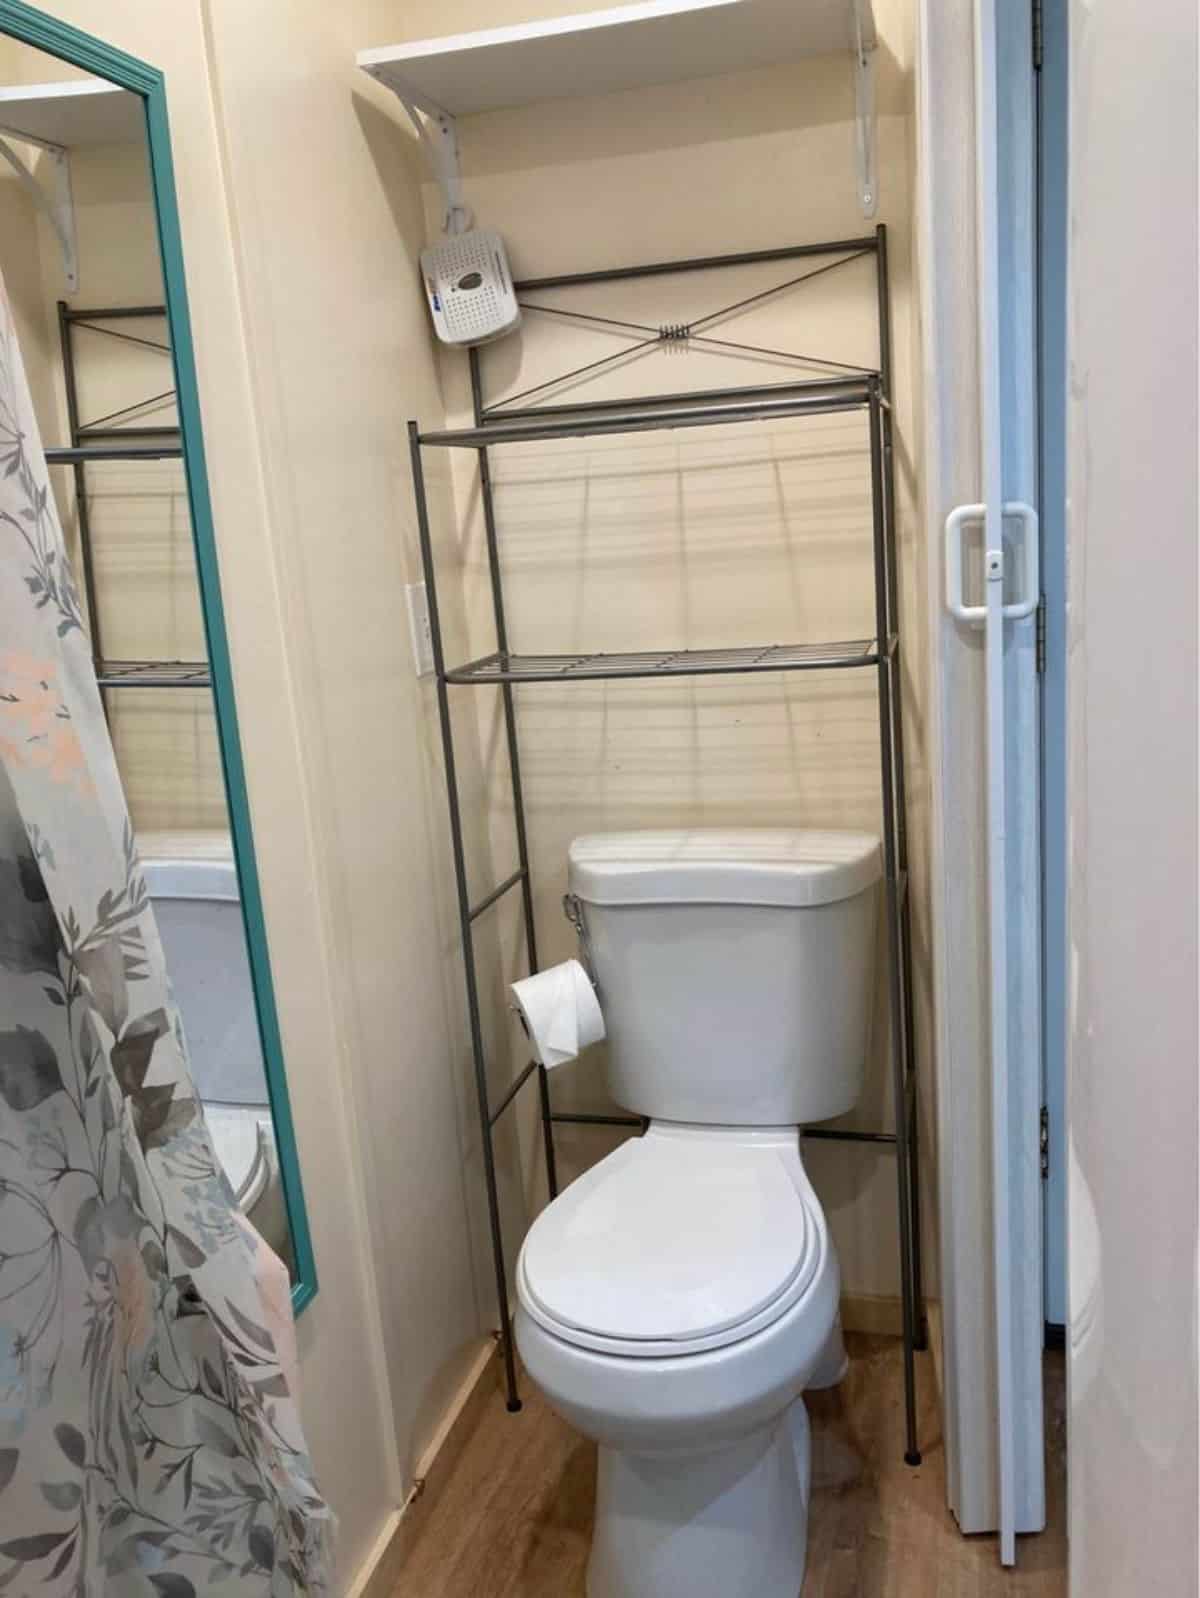 standard toilet with storage racks behind the toilet in bathroom